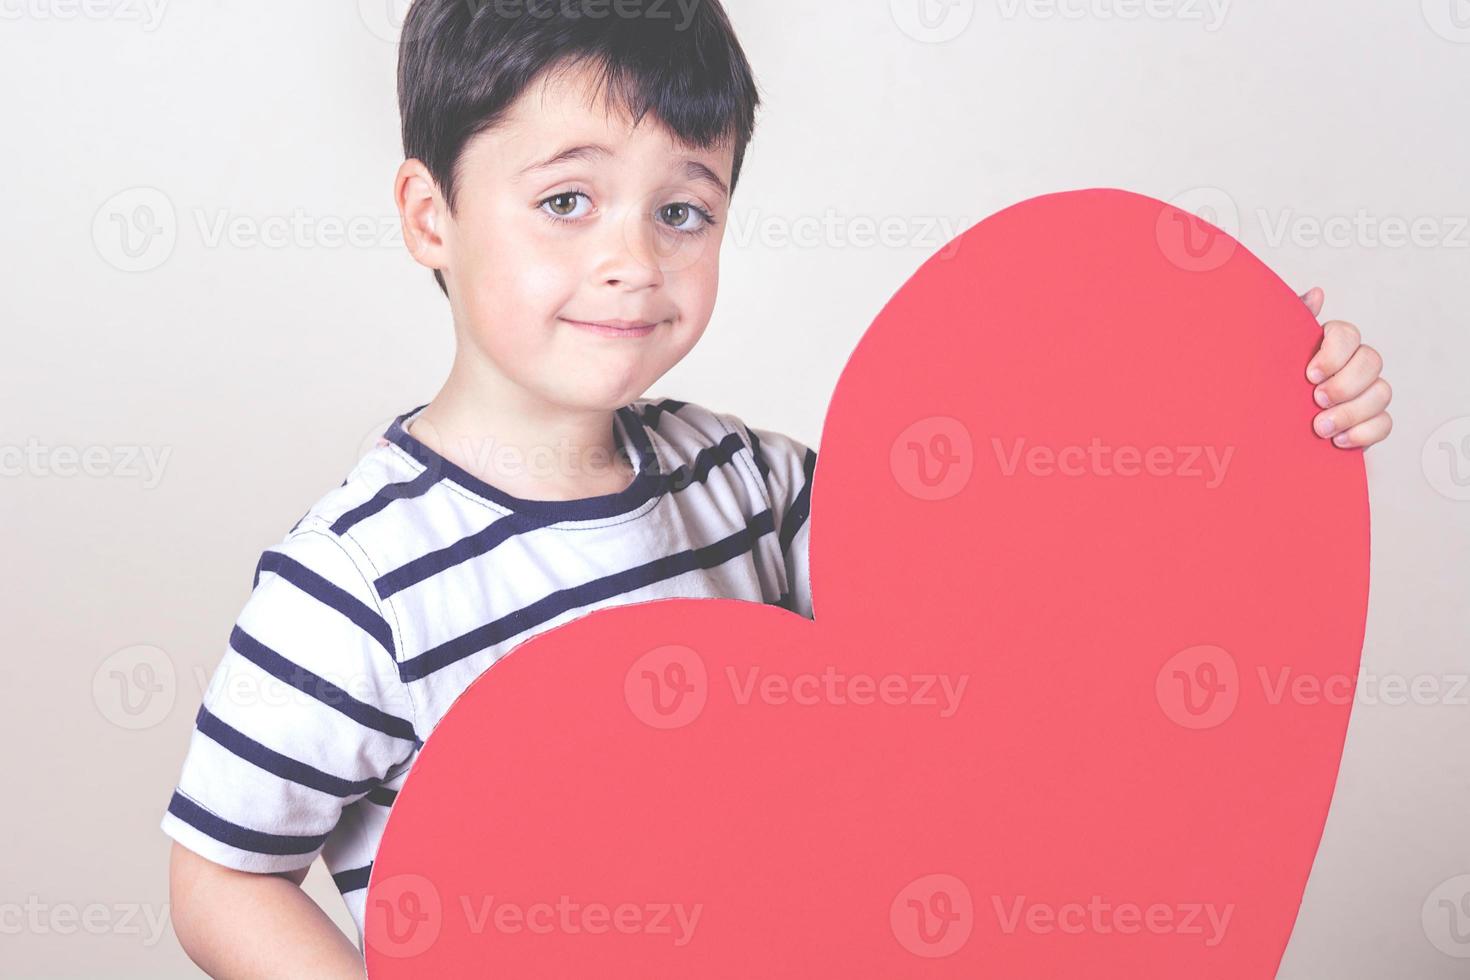 niño feliz con un corazón rojo foto